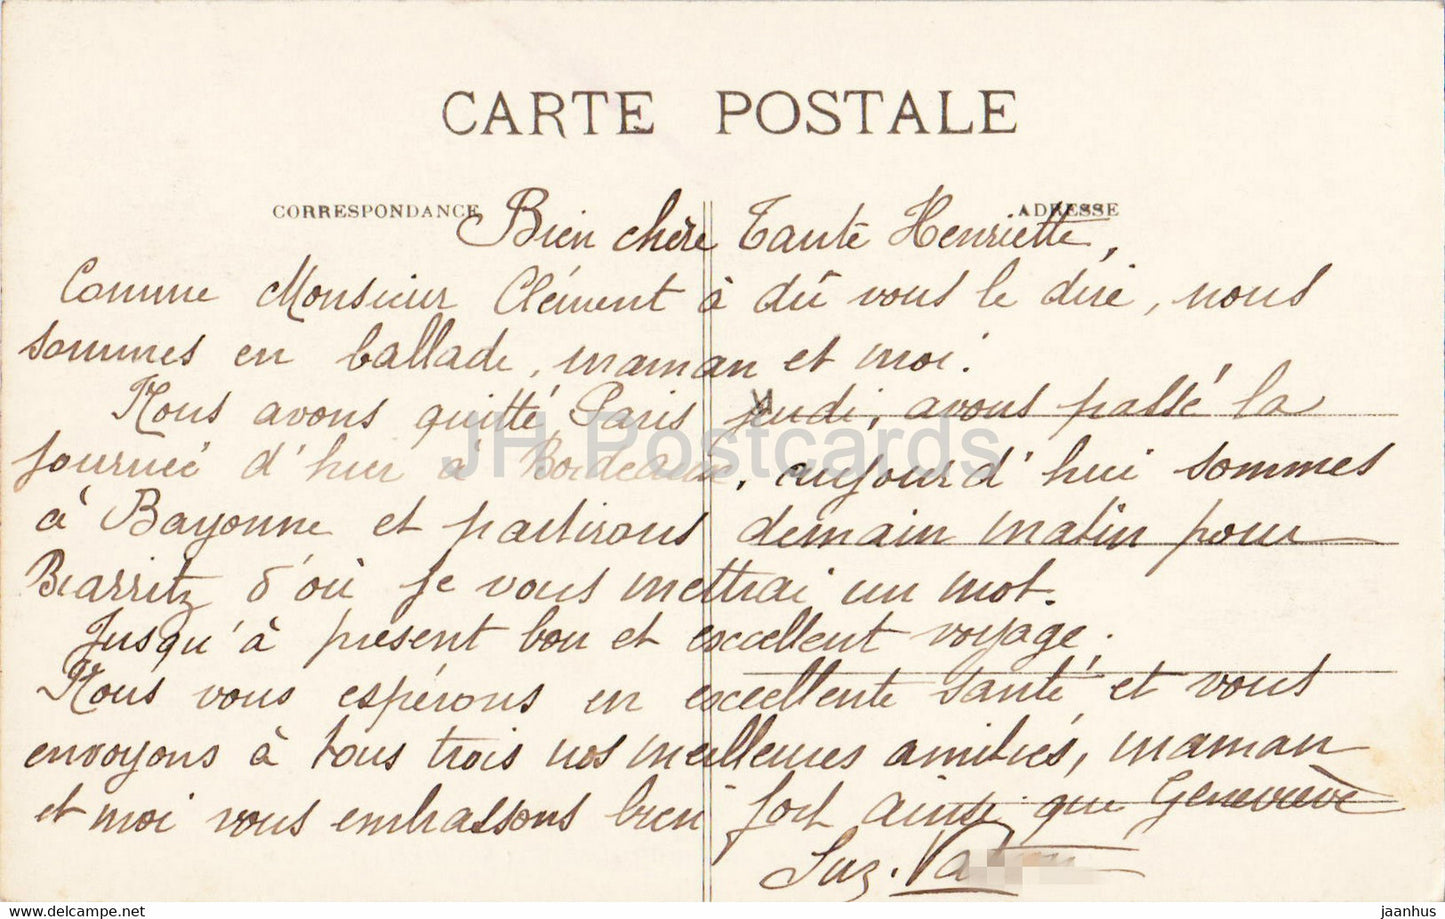 Bayonne - La Place du Reduit et le Pont Saint Esprit - Brücke - 85 - alte Postkarte - Frankreich - gebraucht